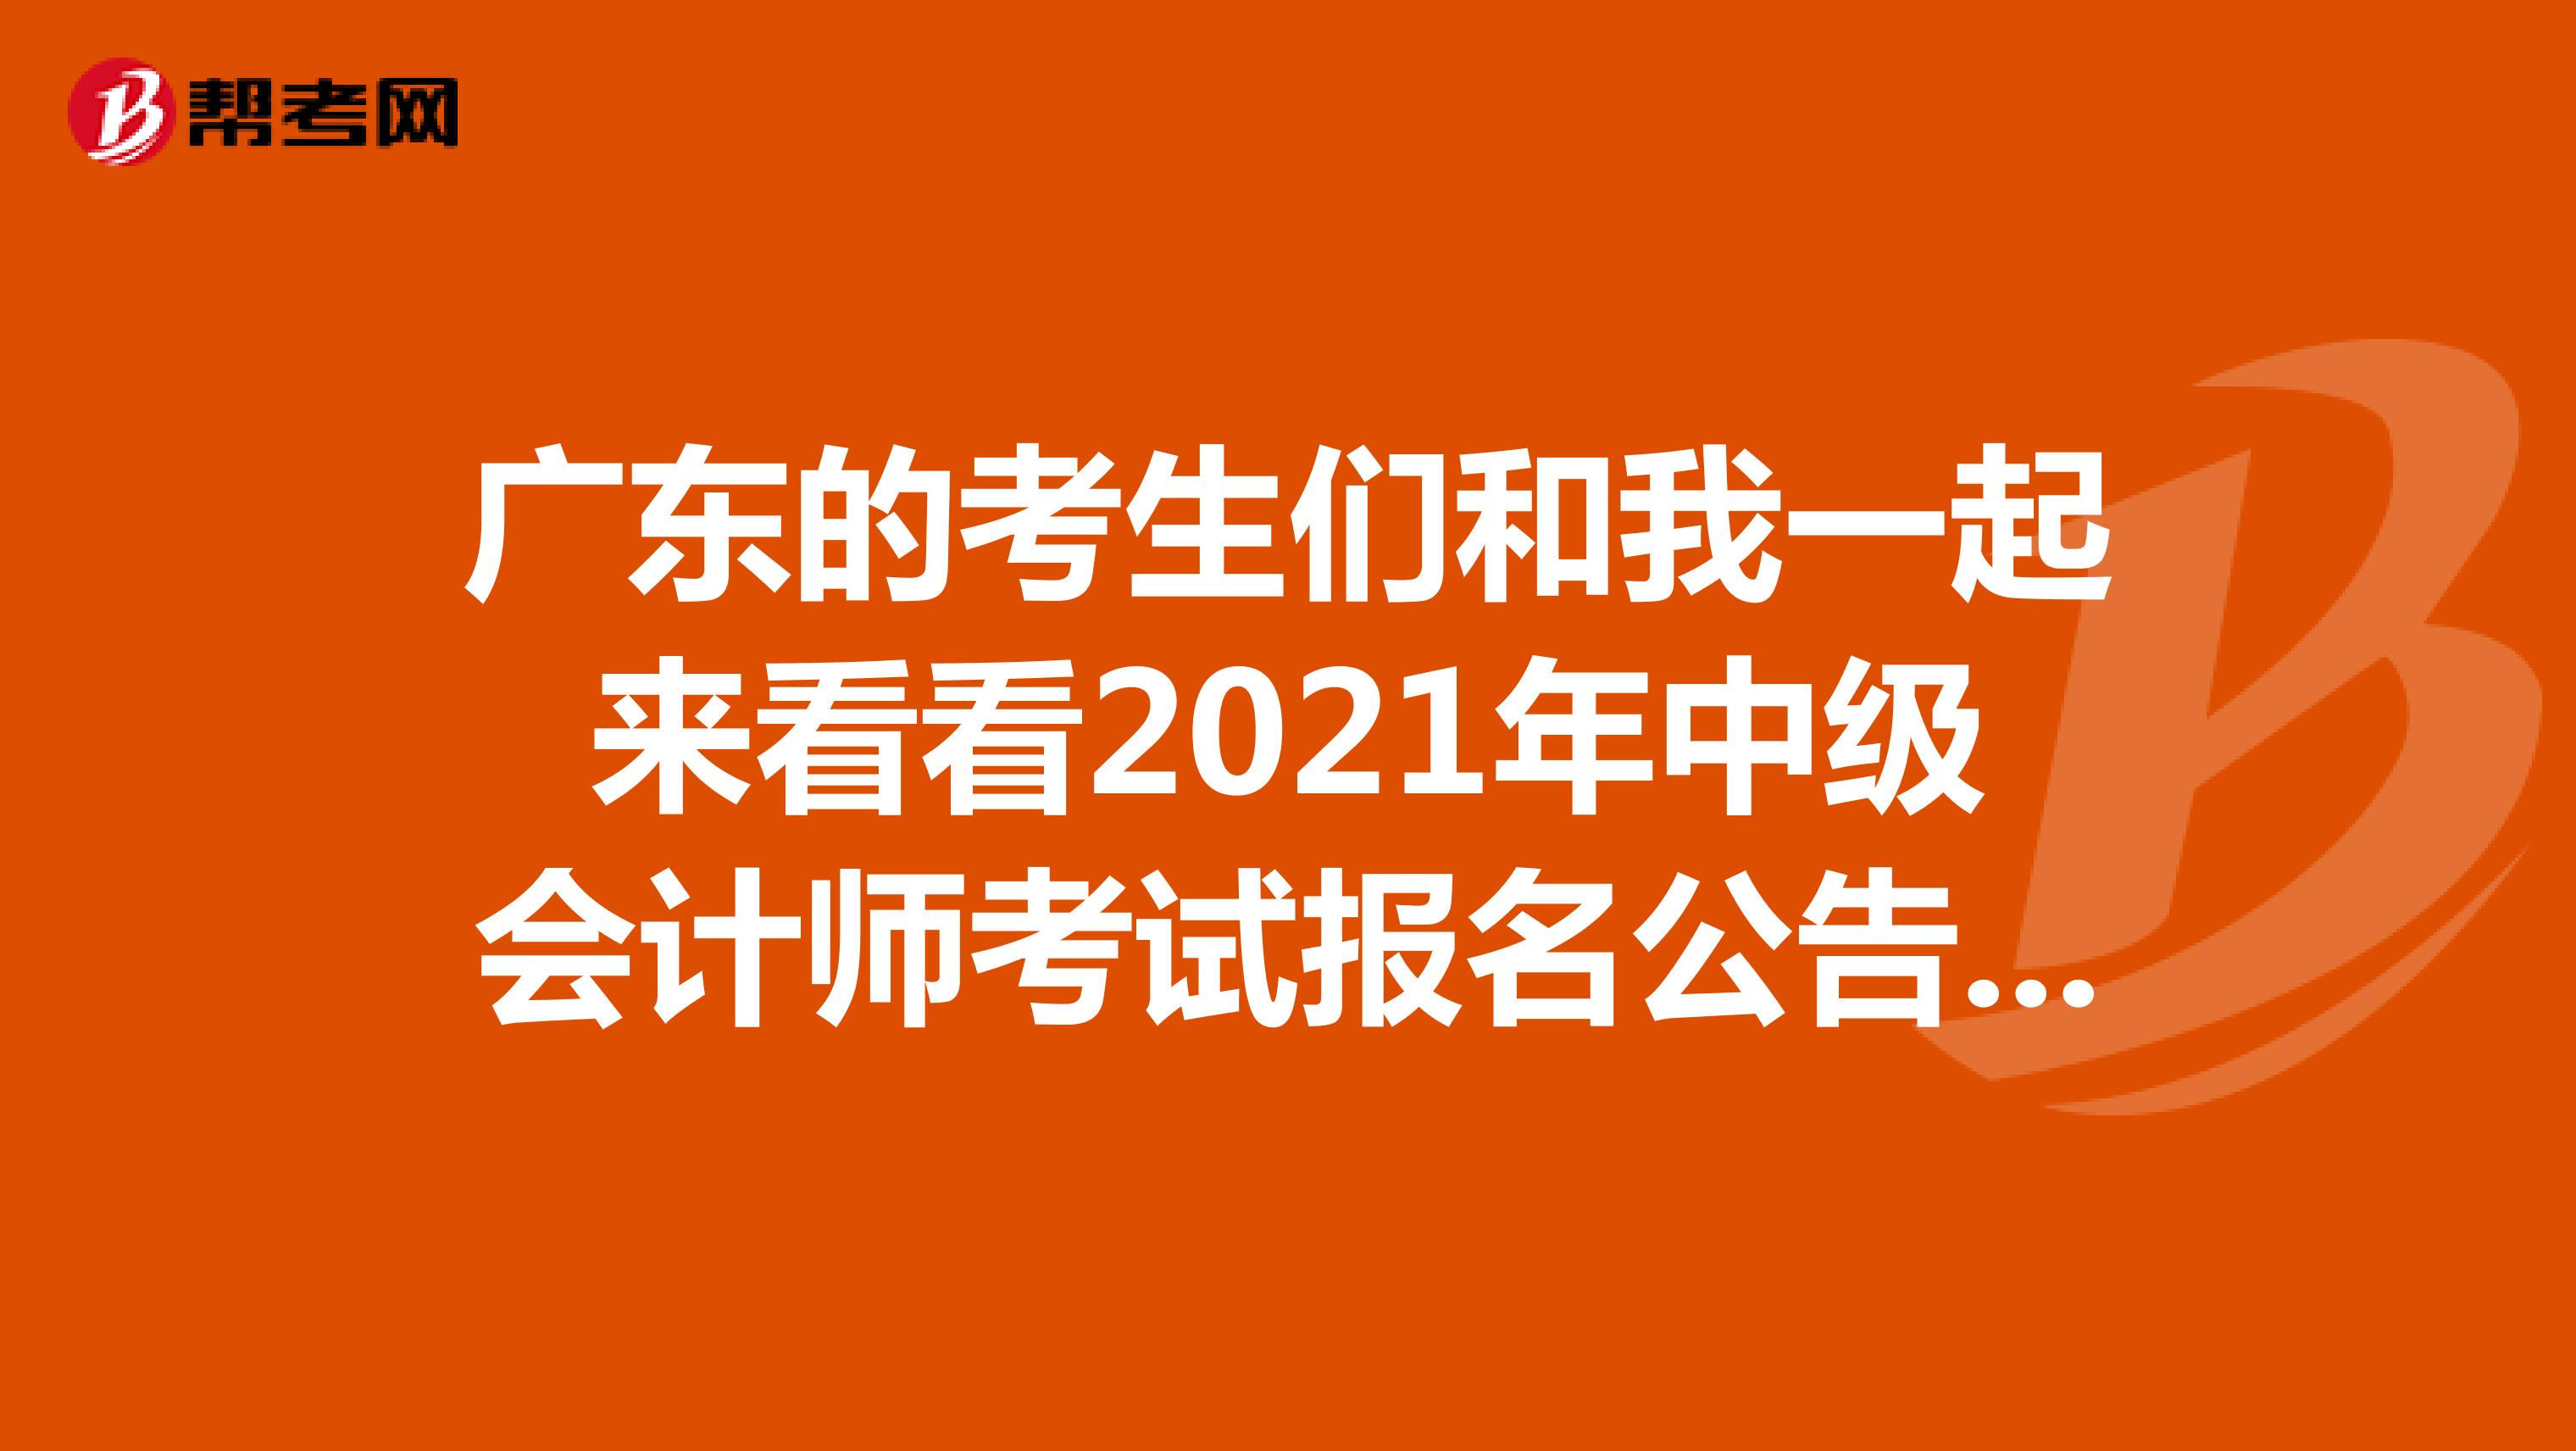 广东的考生们和我一起来看看2021年中级会计师考试报名公告吧！